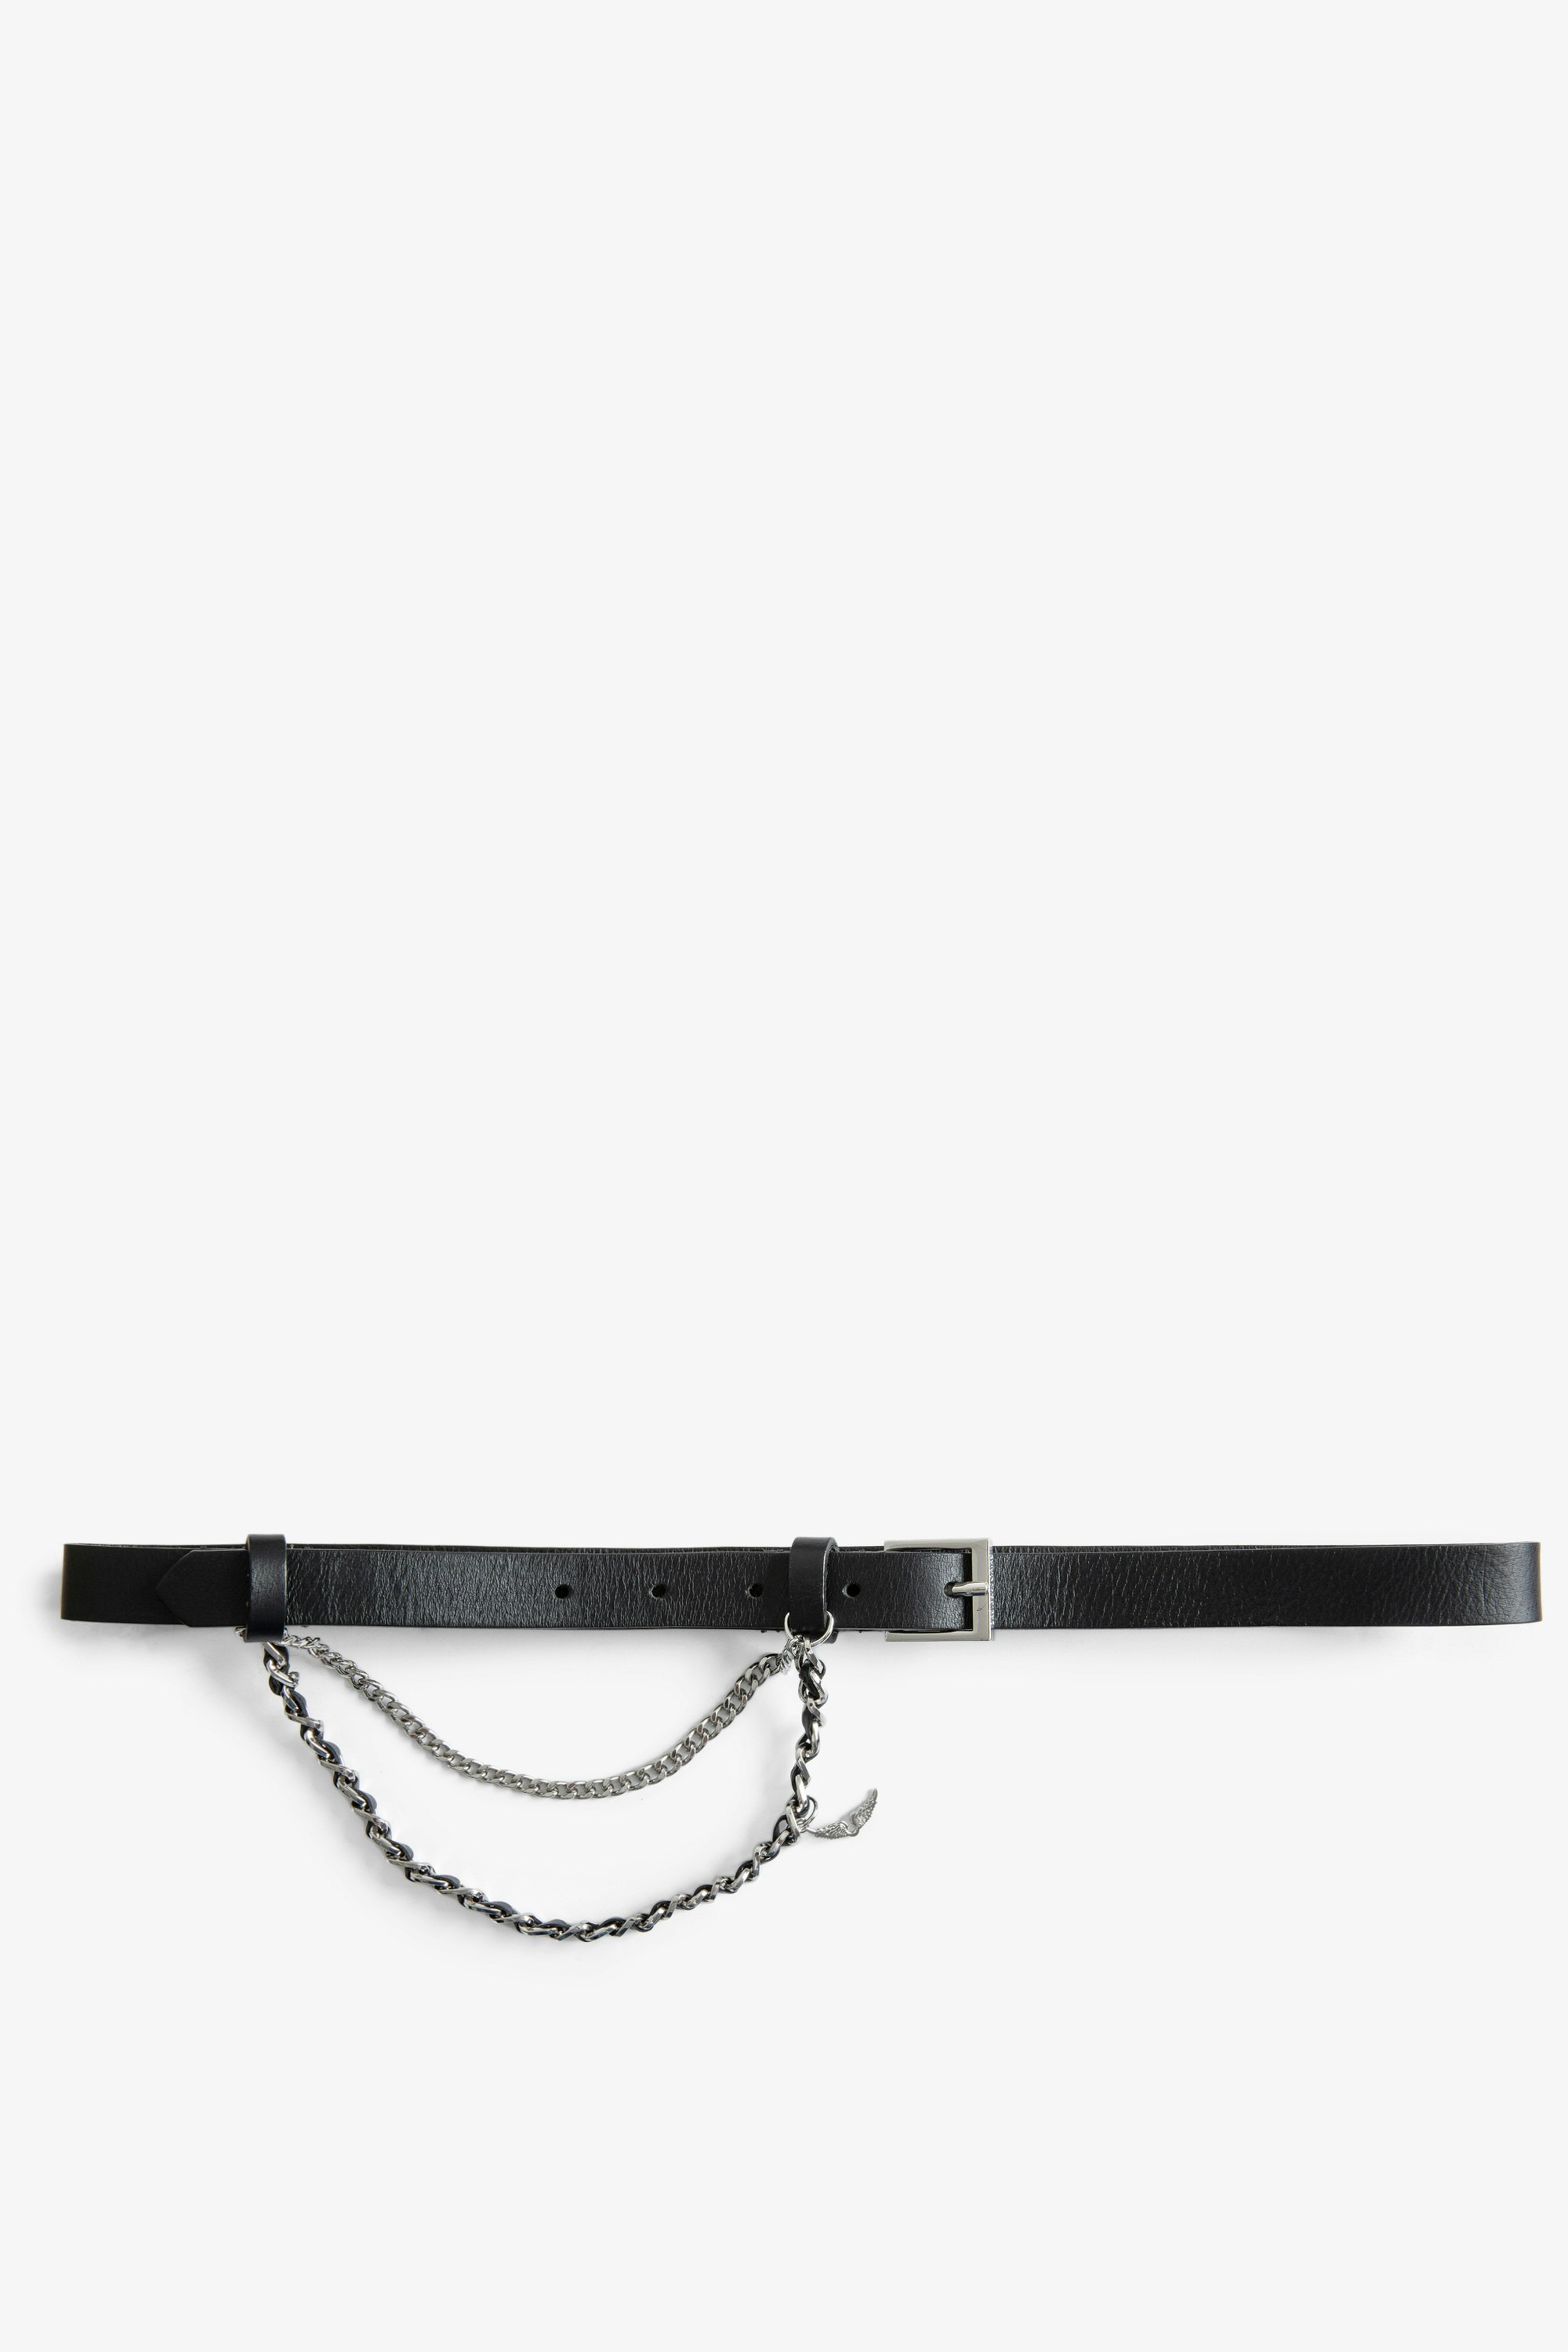 Cinturón Rock Chain Cinturón de piel negra de mujer de Zadig&Voltaire con cadena plateada.